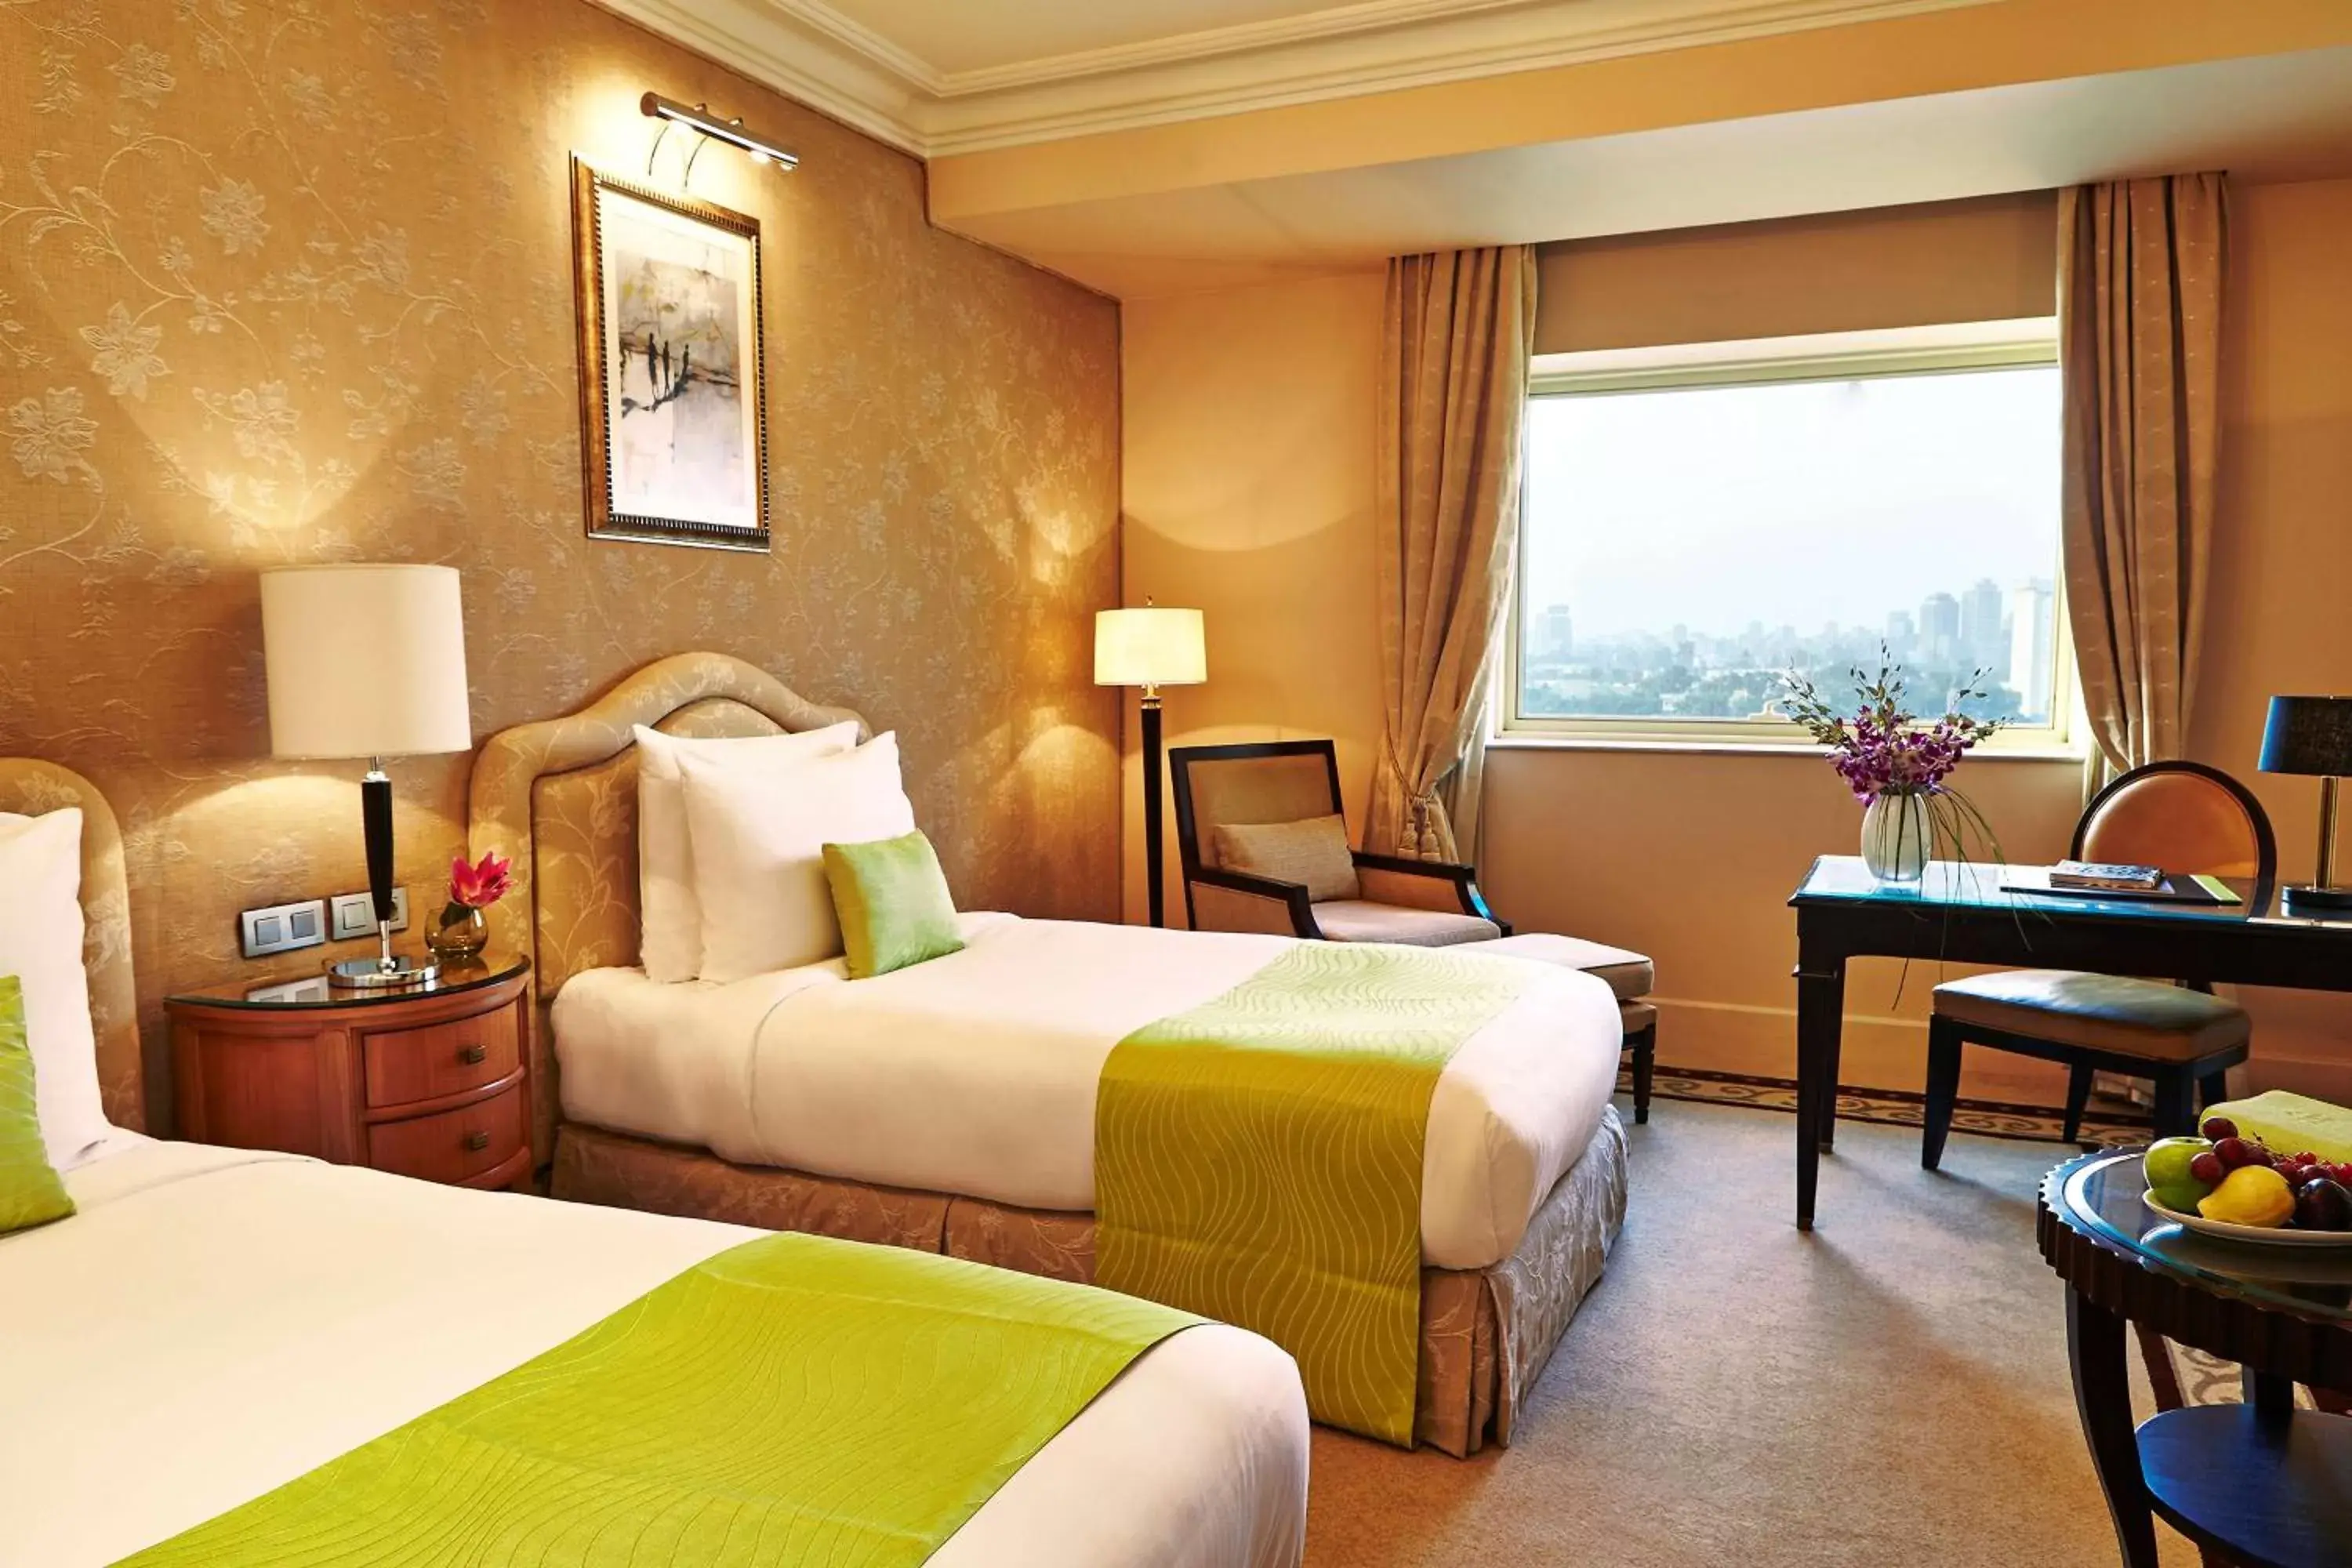 Bedroom in Kempinski Nile Hotel, Cairo